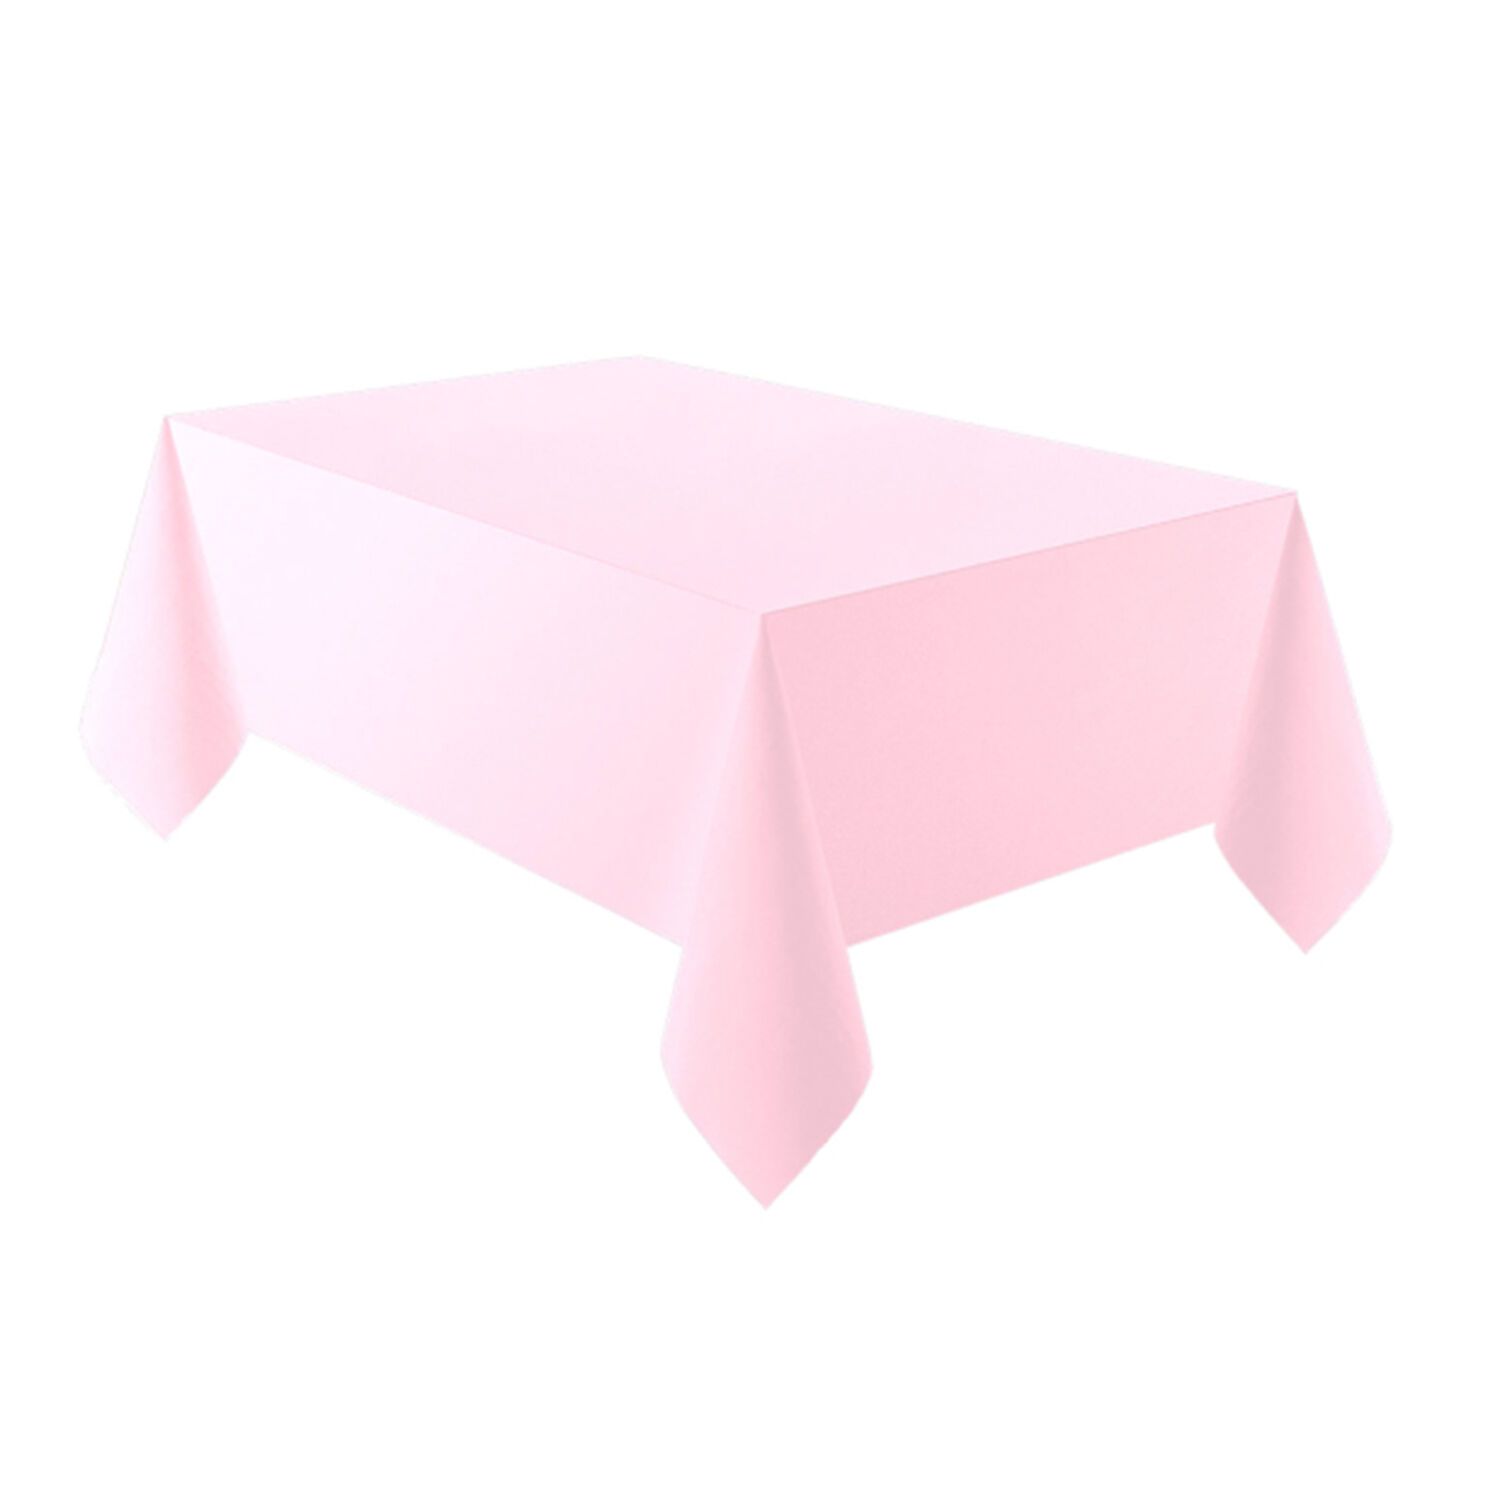 NEU Tischdecke aus Kunststoff, ca. 137x274cm, rosa